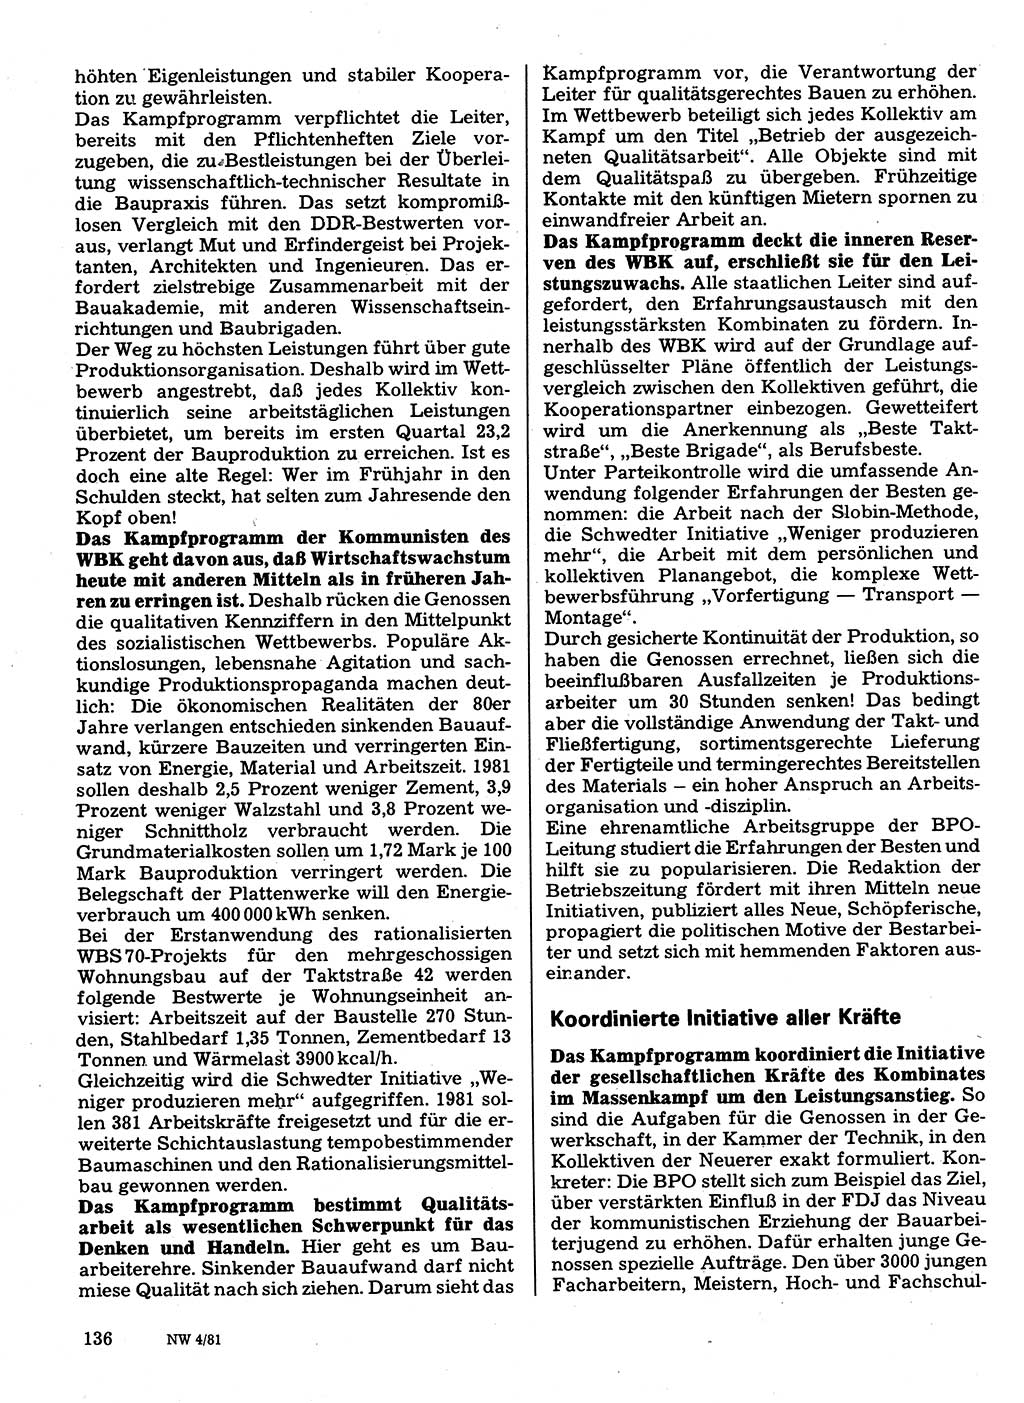 Neuer Weg (NW), Organ des Zentralkomitees (ZK) der SED (Sozialistische Einheitspartei Deutschlands) für Fragen des Parteilebens, 36. Jahrgang [Deutsche Demokratische Republik (DDR)] 1981, Seite 136 (NW ZK SED DDR 1981, S. 136)